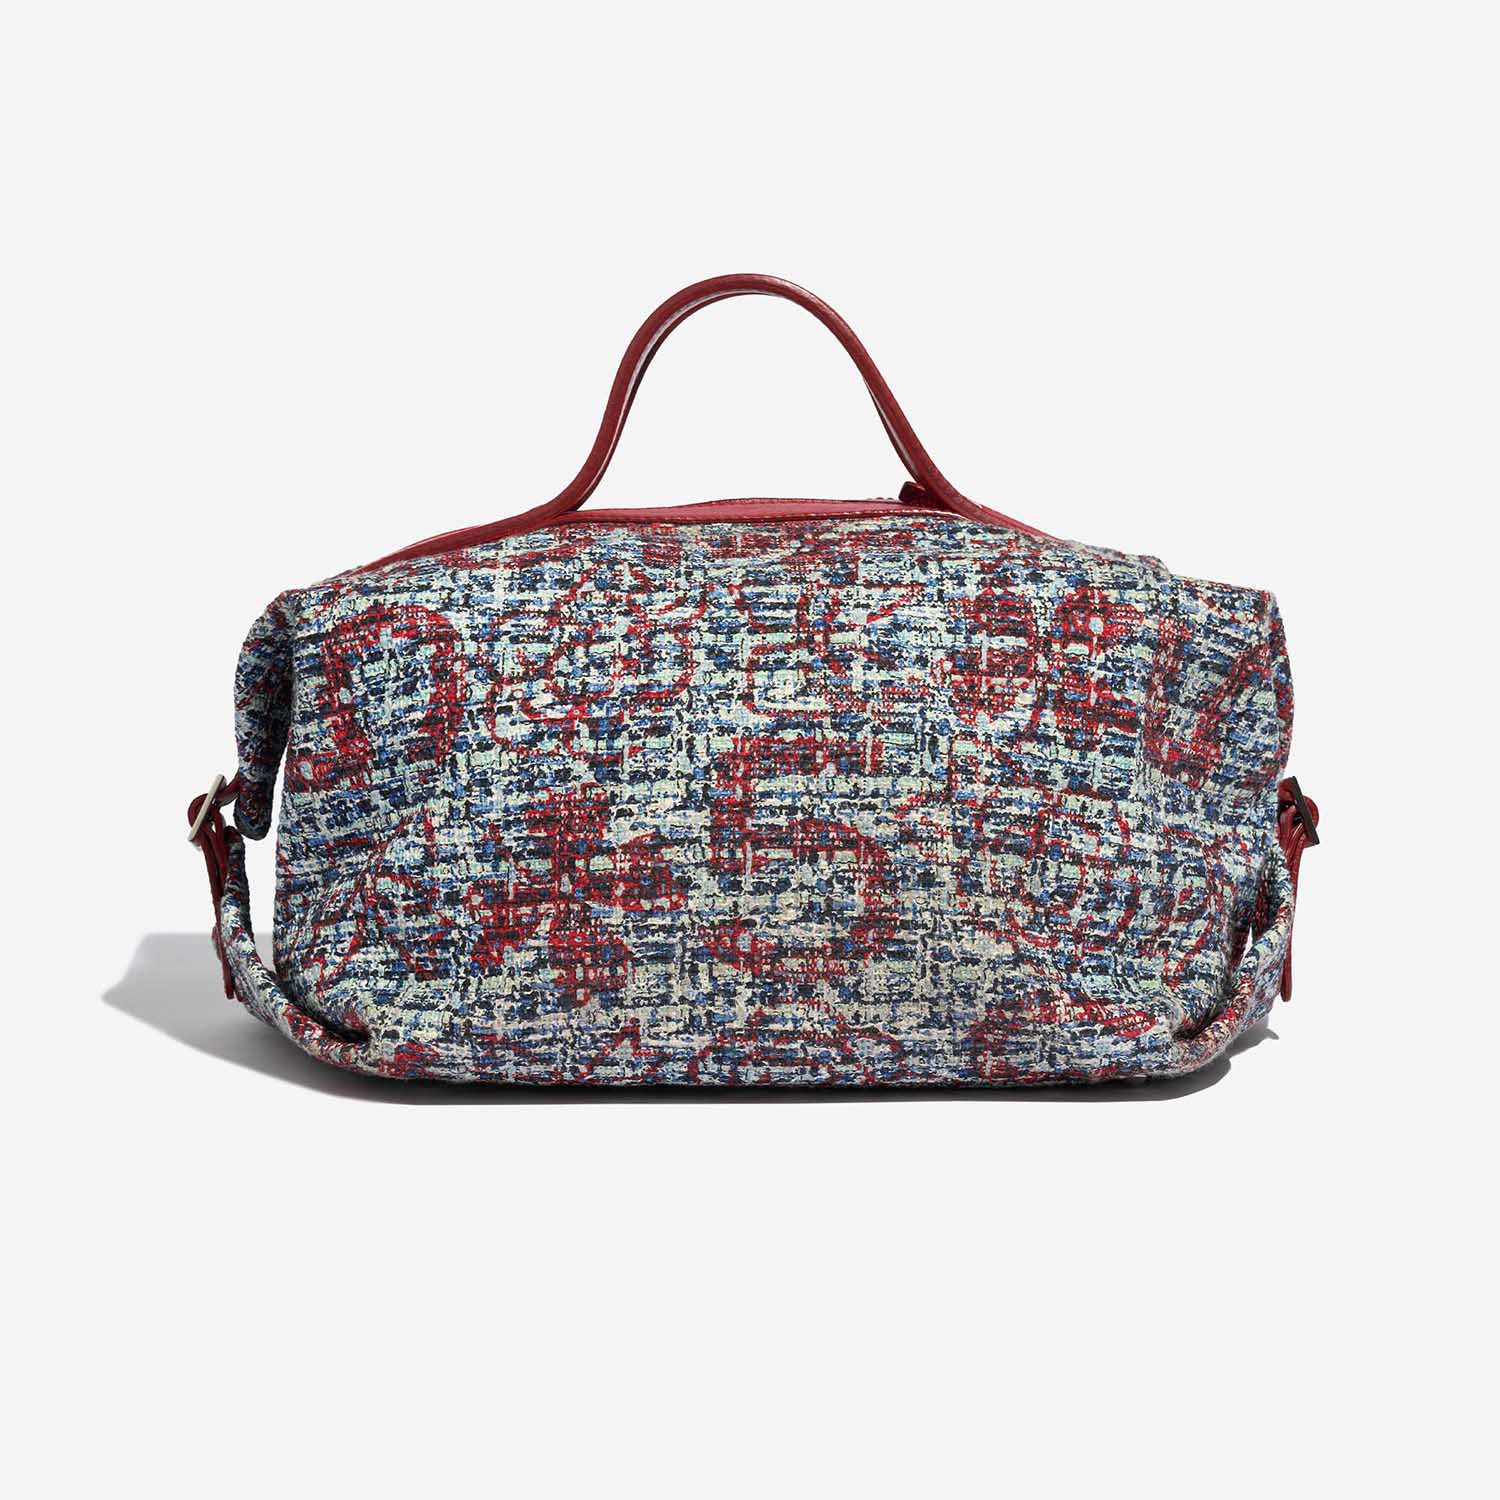 Pre-owned Chanel bag Duffle Bag Tweed Mixed Multicolour Back | Verkaufen Sie Ihre Designer-Tasche auf Saclab.com